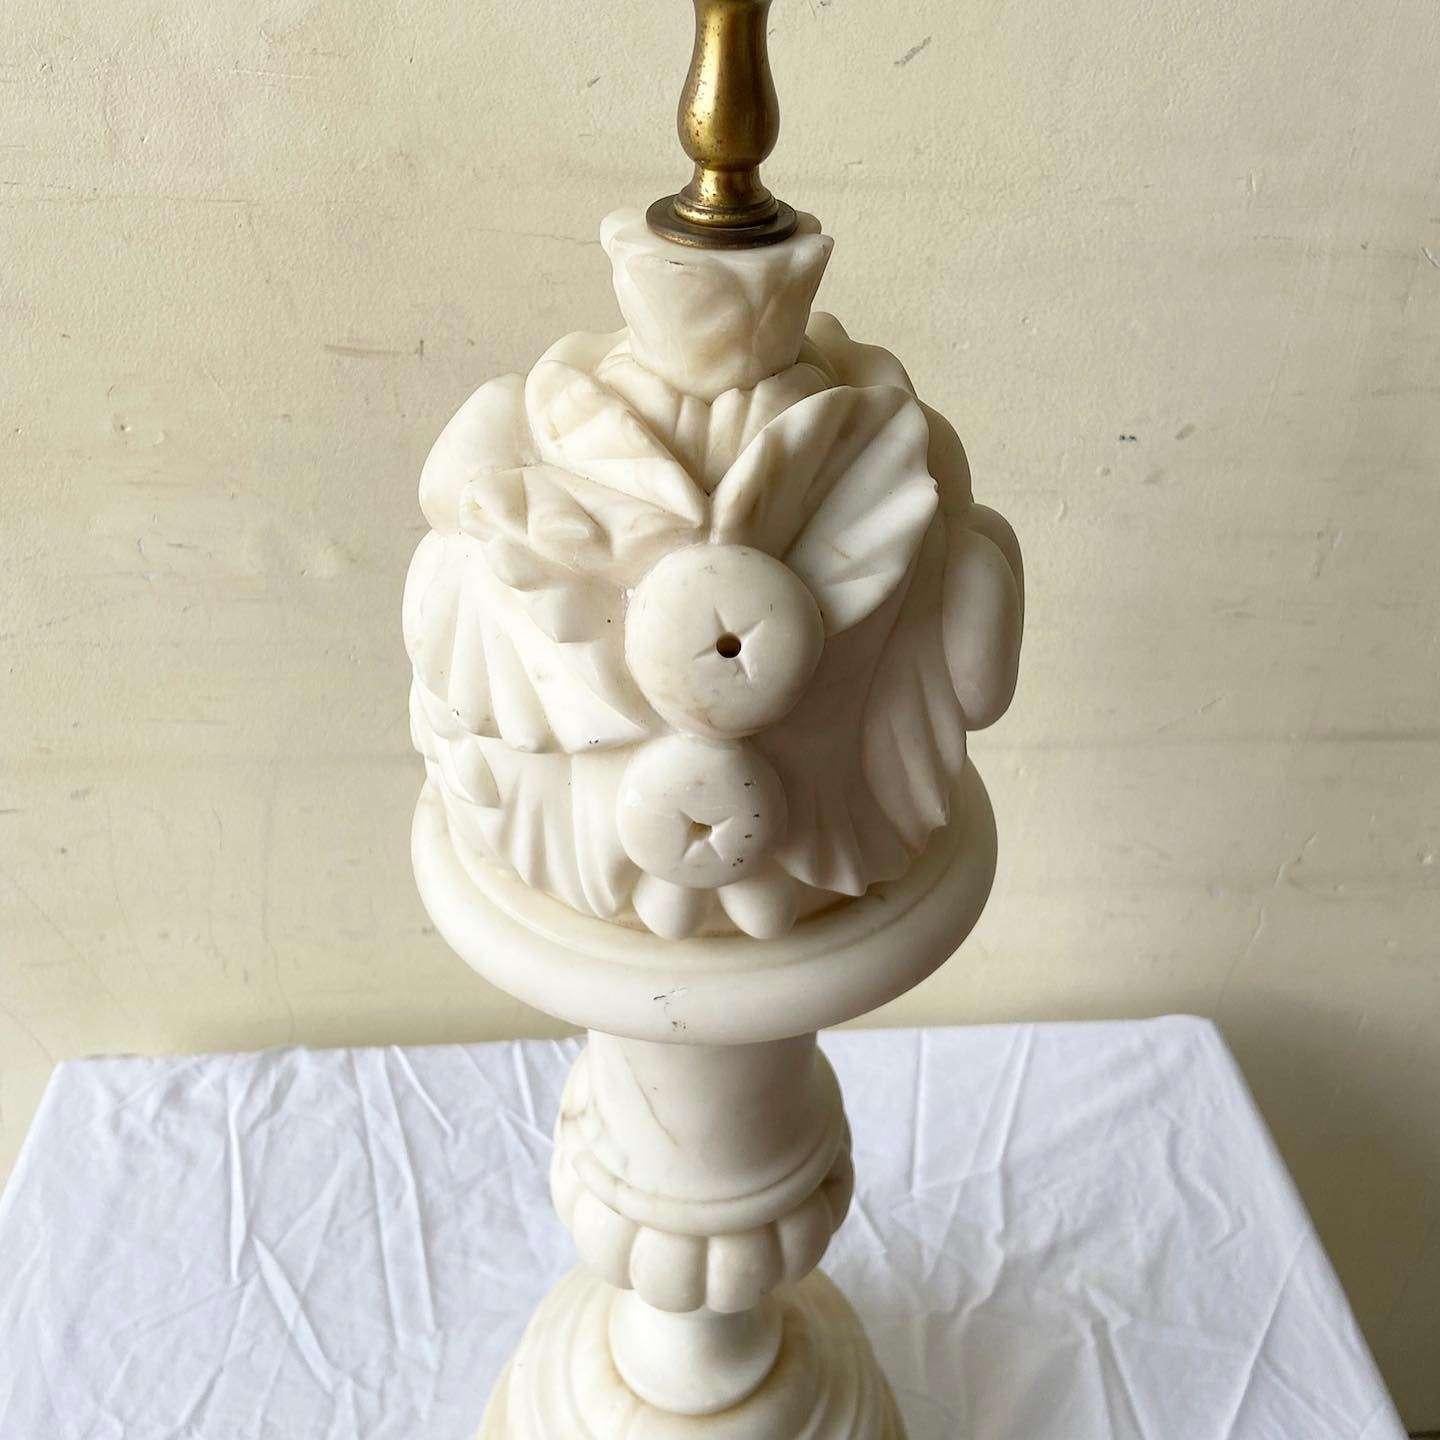 sculpting table lamp